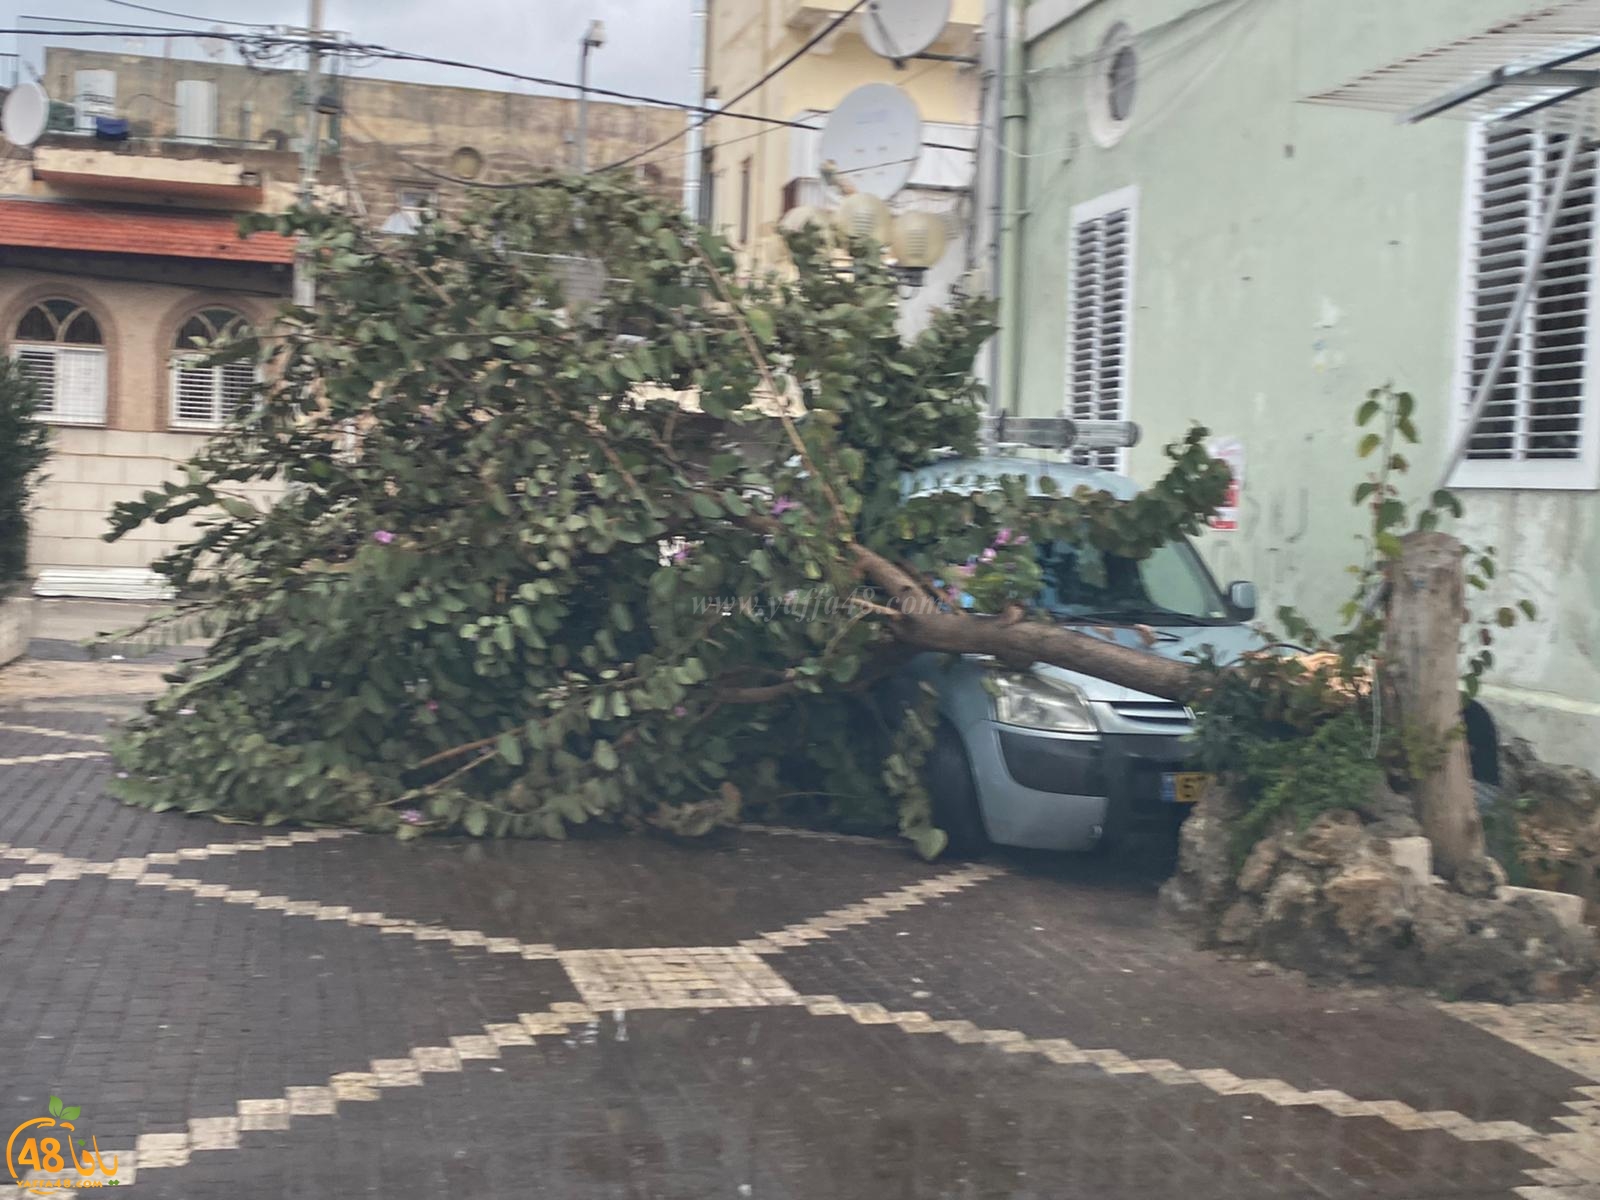 بسبب قوّة الرياح - سقوط شجرة كبيرة على مركبة في يافا 